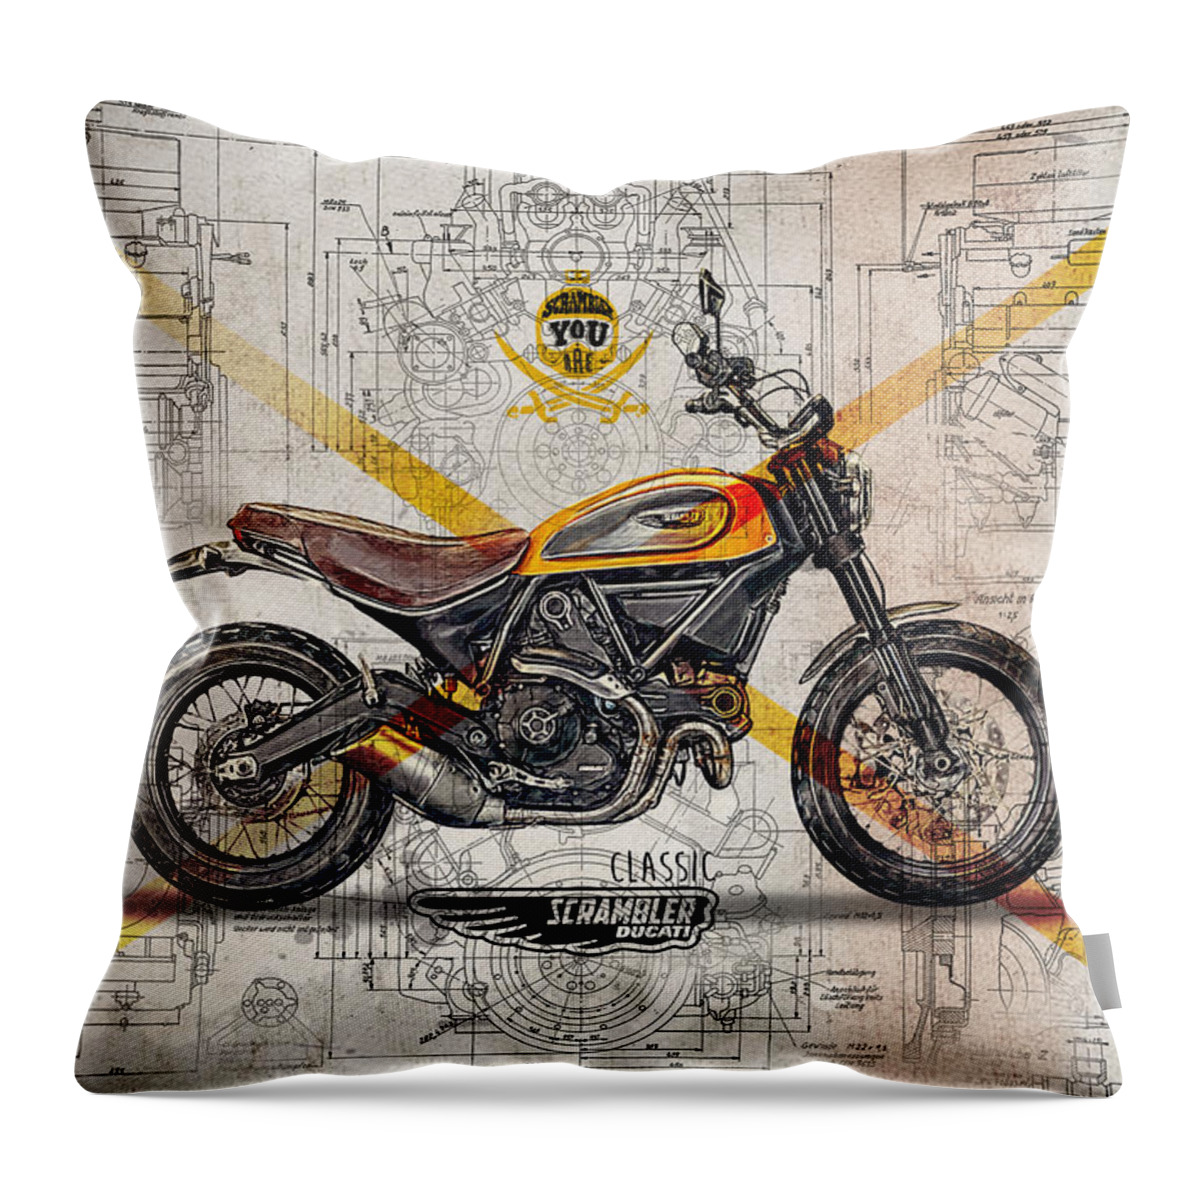 Ducati Throw Pillow featuring the digital art Ducati Scrambler Classic by Yurdaer Bes